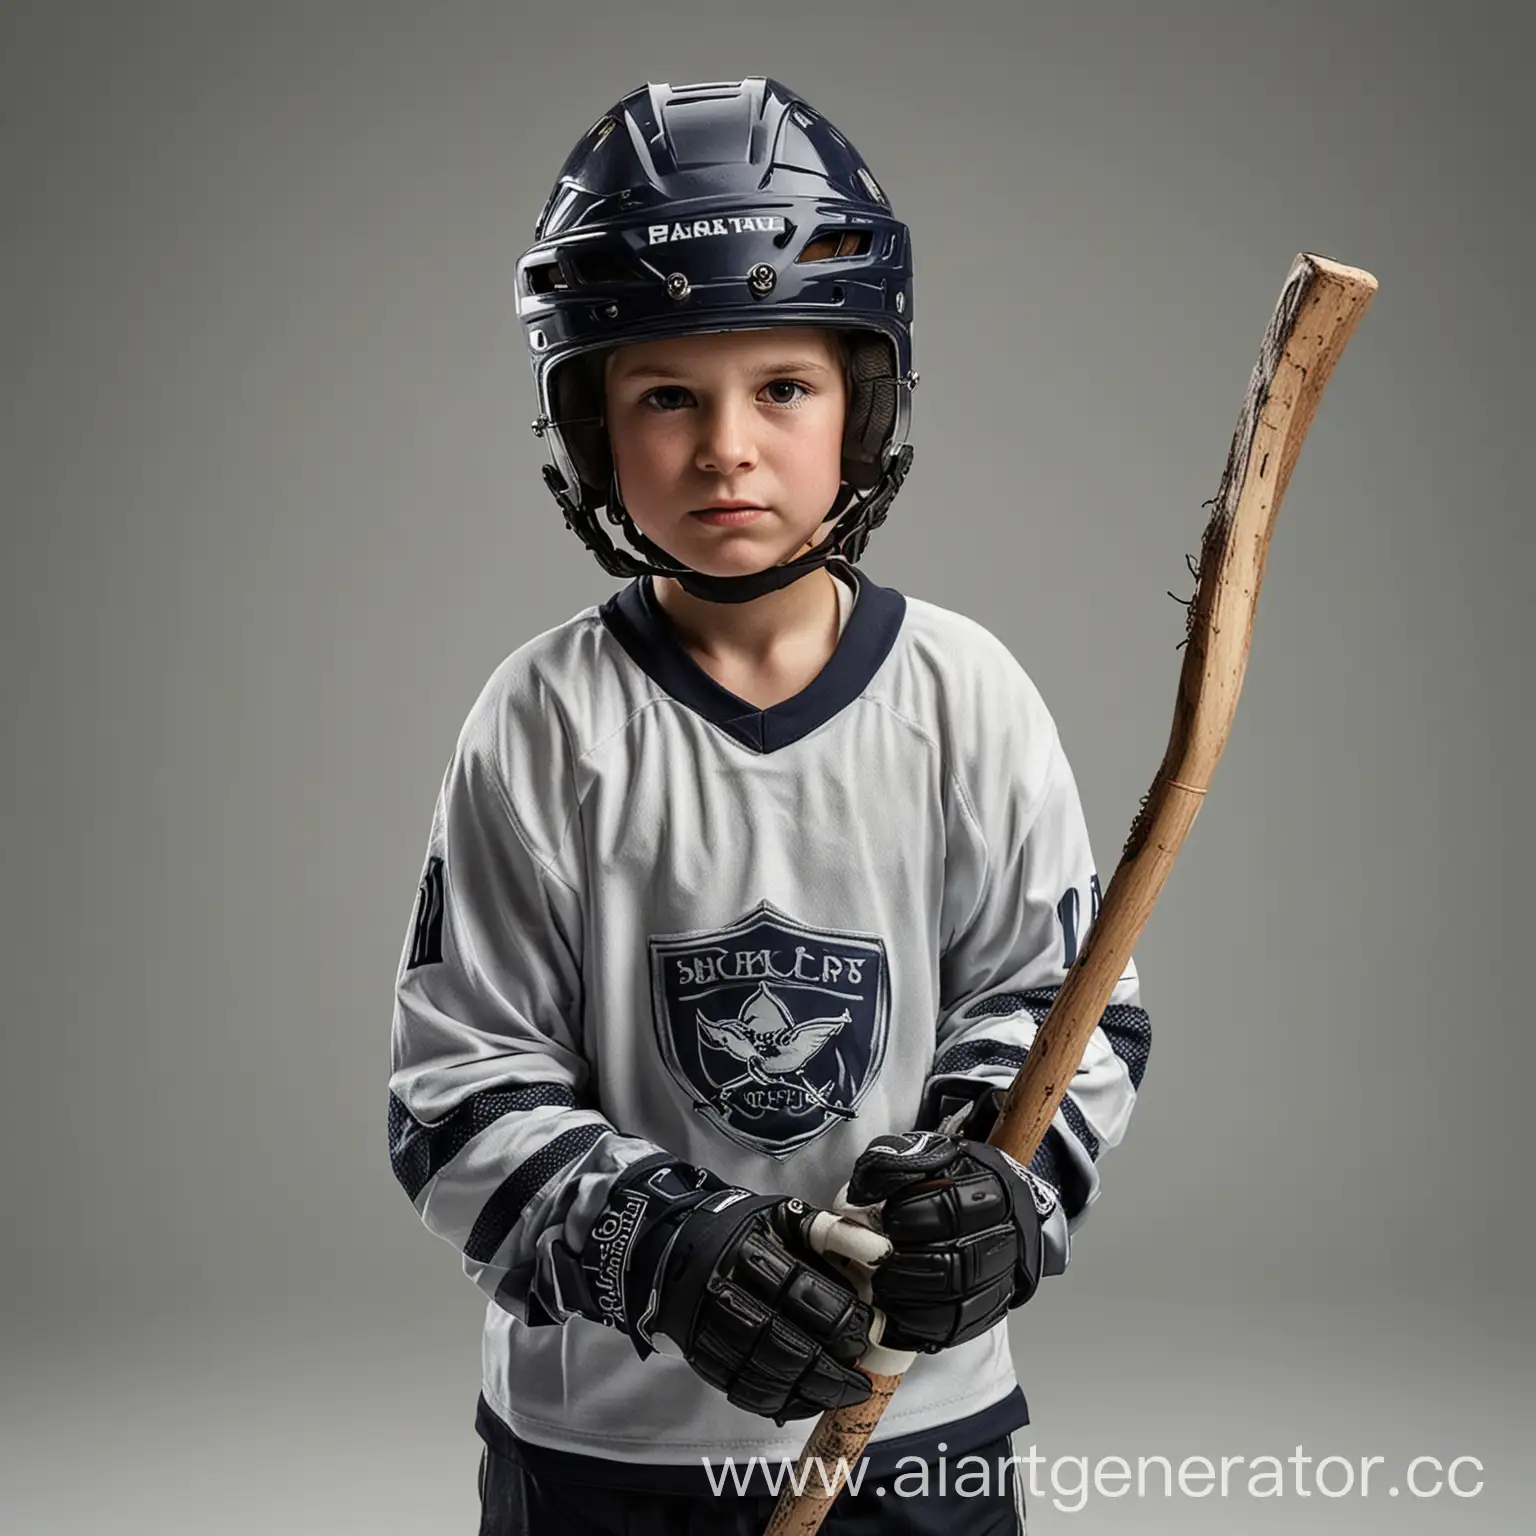 мальчик хокейст в шлеме, с клюшкой, без фона, на форме нет логотипов